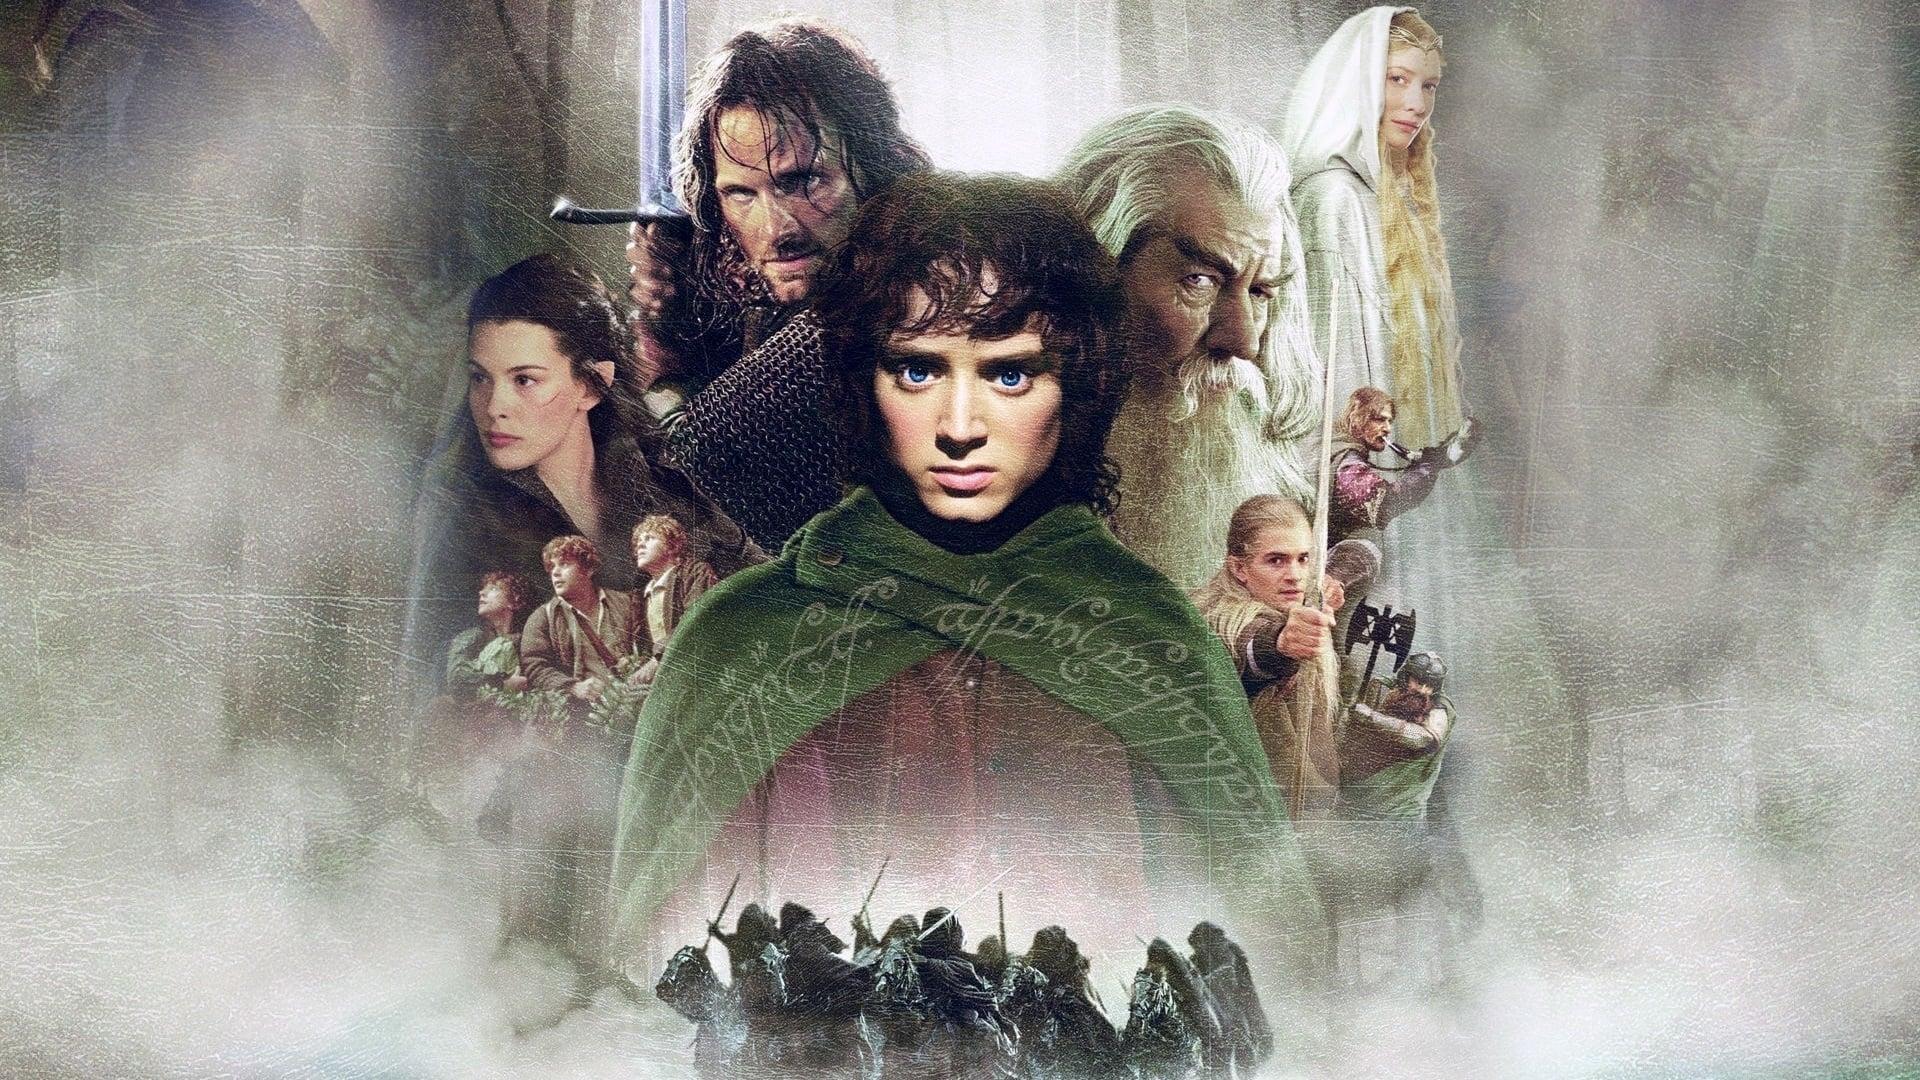 دانلود فیلم The Lord of the Rings: The Fellowship of the Ring 2001